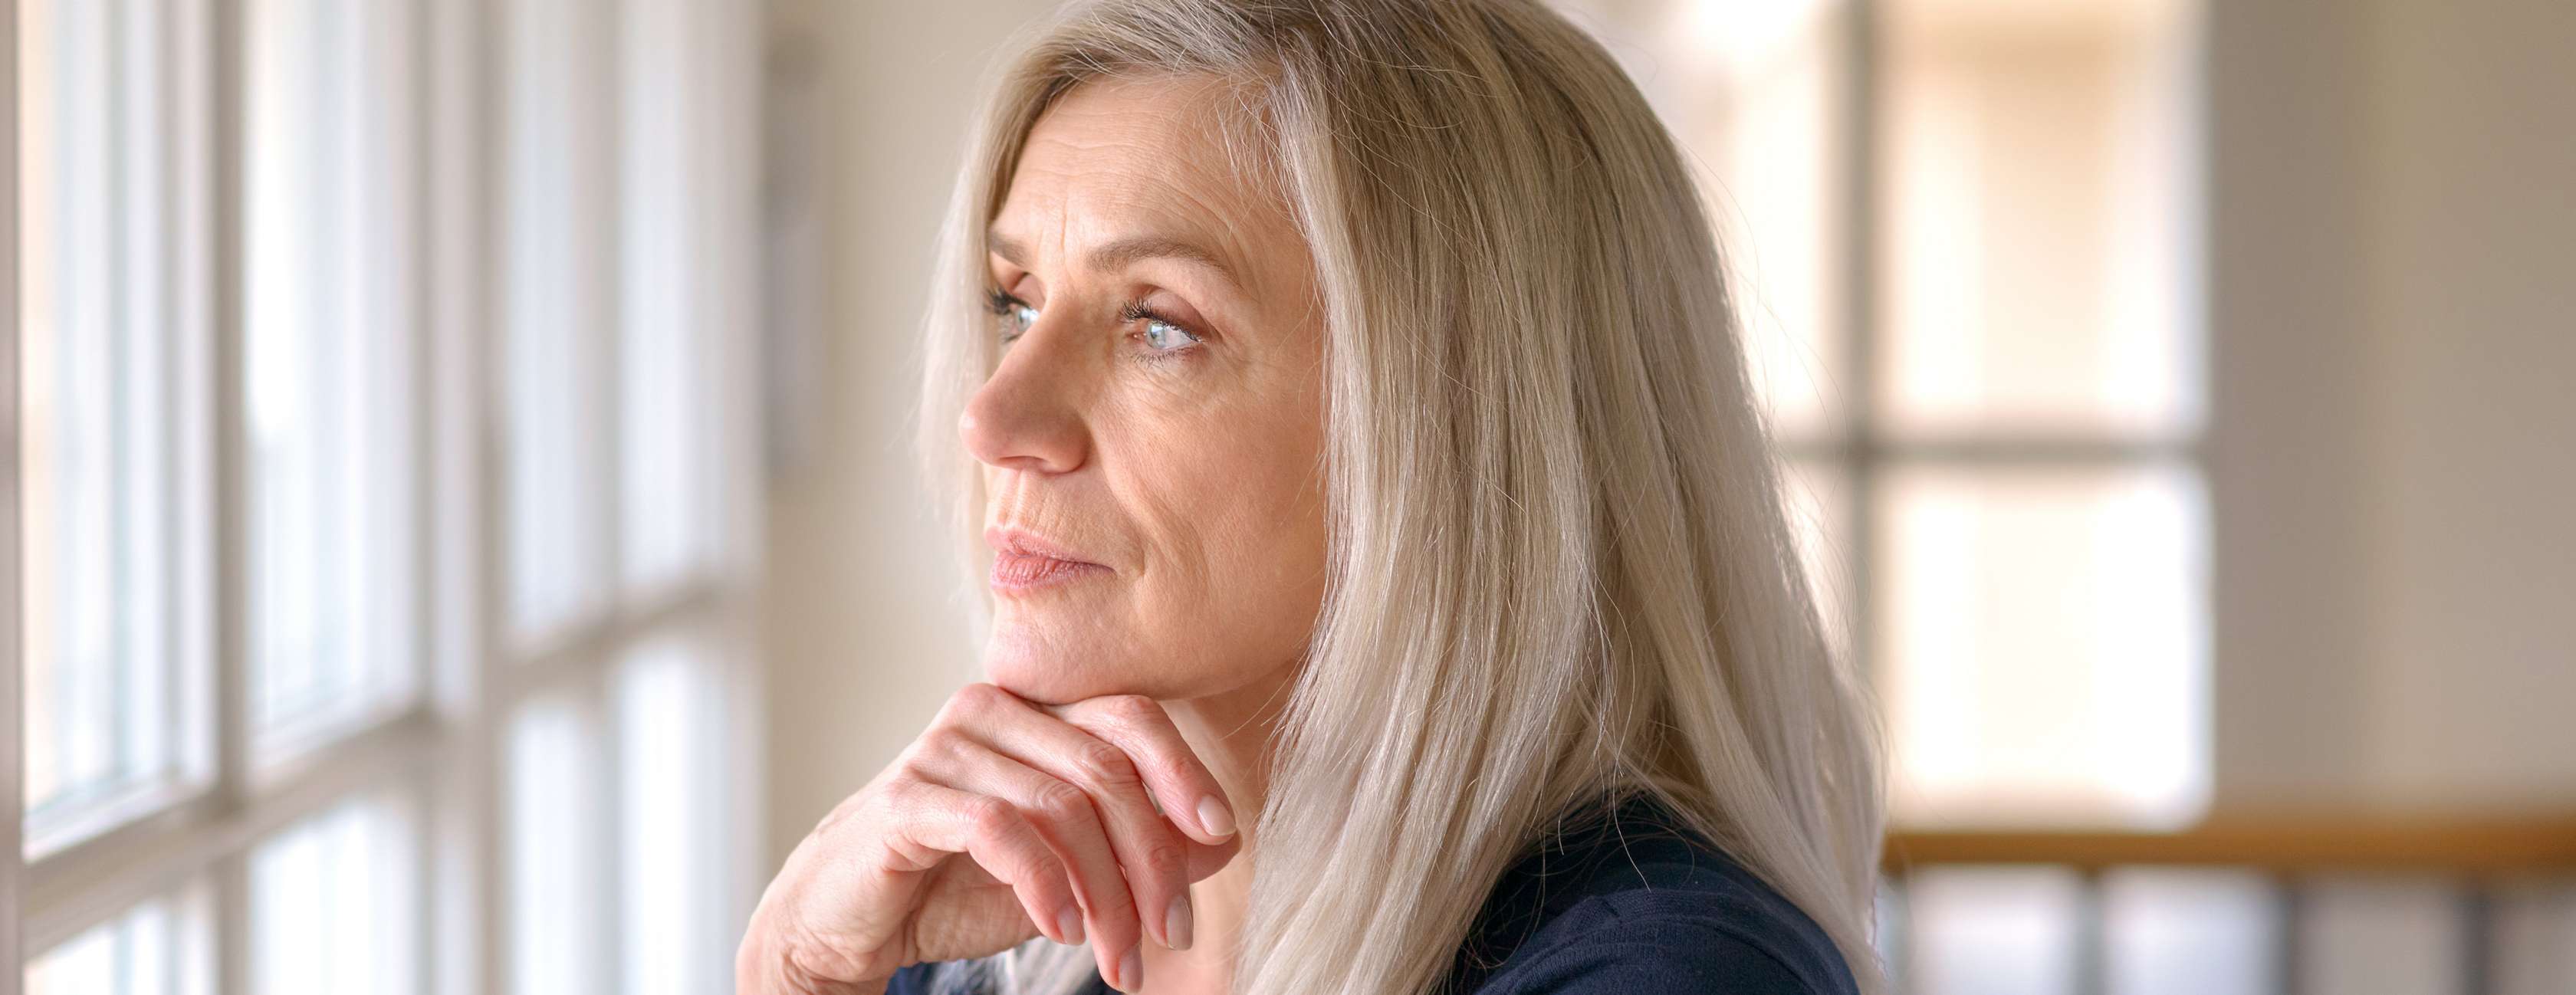 Allianz - Vorsorge - Rente aufstocken: Eine ältere Frau mit langen Haaren schaut nachdenklich aus dem Fenster.